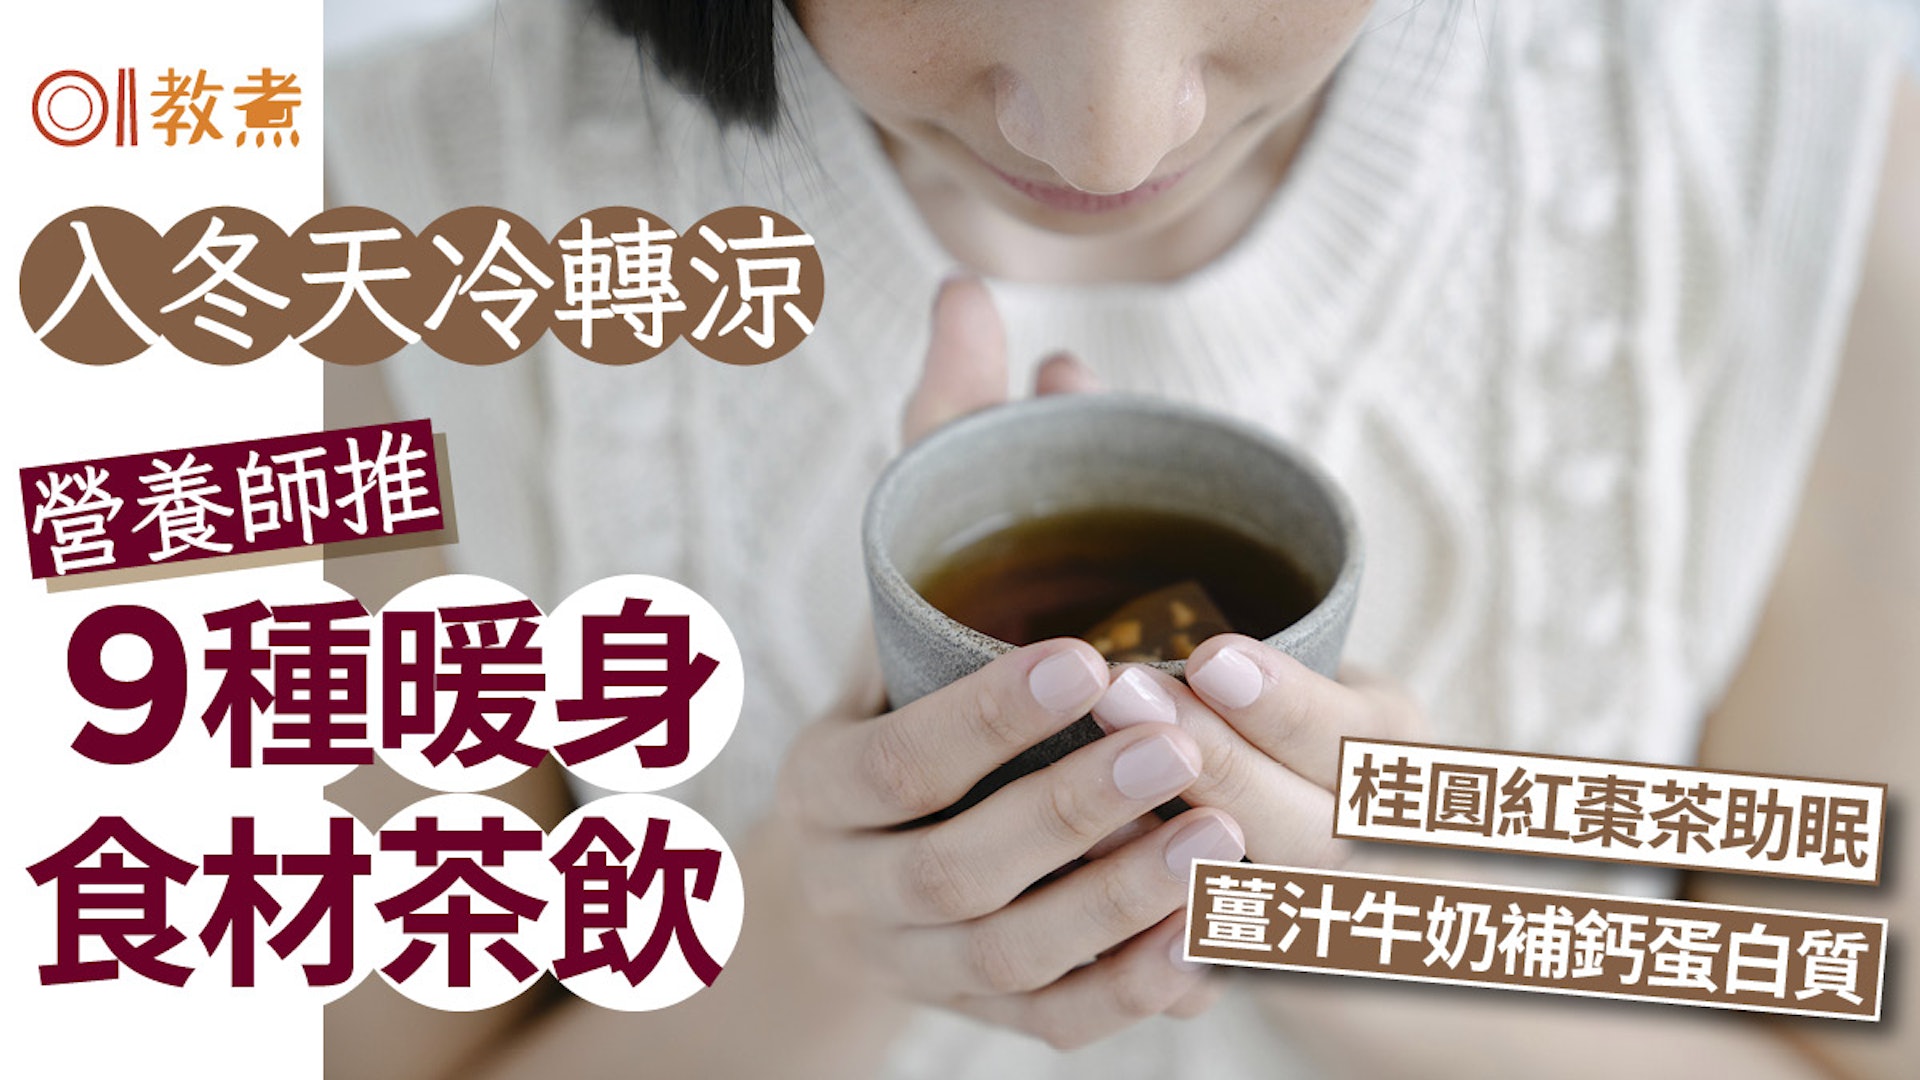 營養師推9種暖身食材茶飲 –  桂圓紅棗茶/薑汁奶